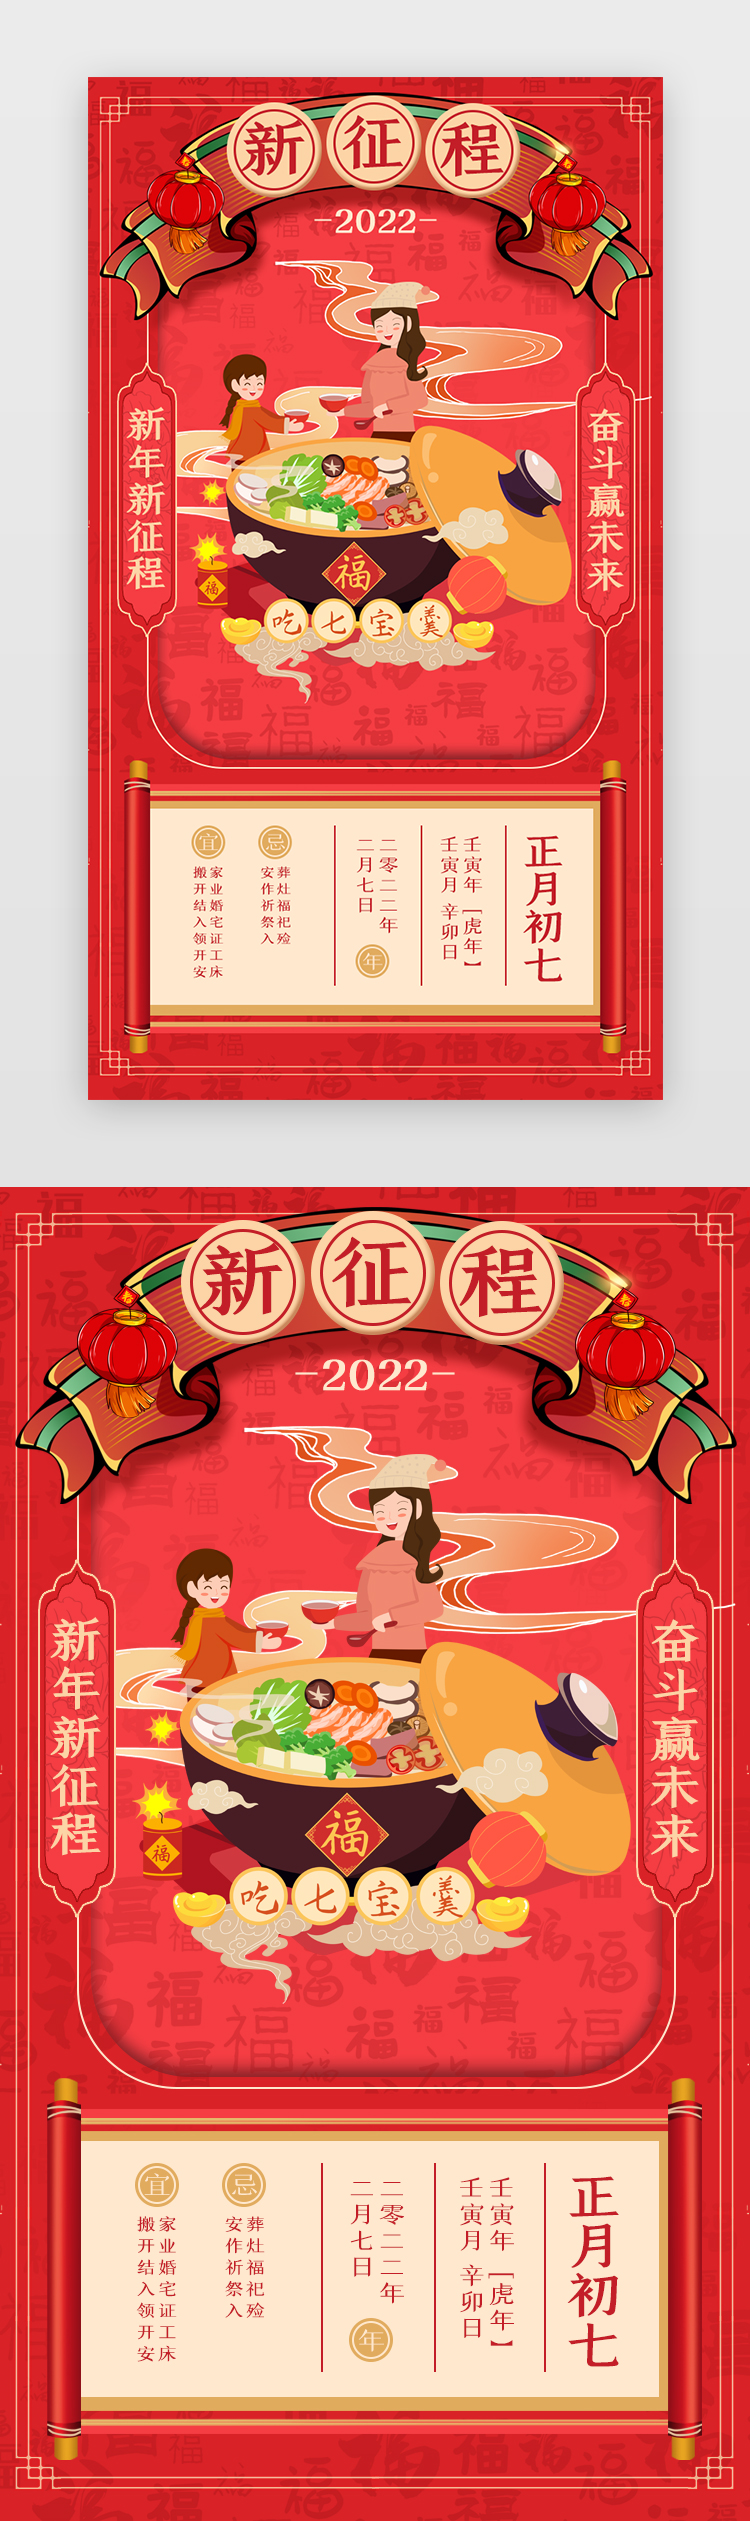 新年年俗App闪屏正月初七红色新征程图片